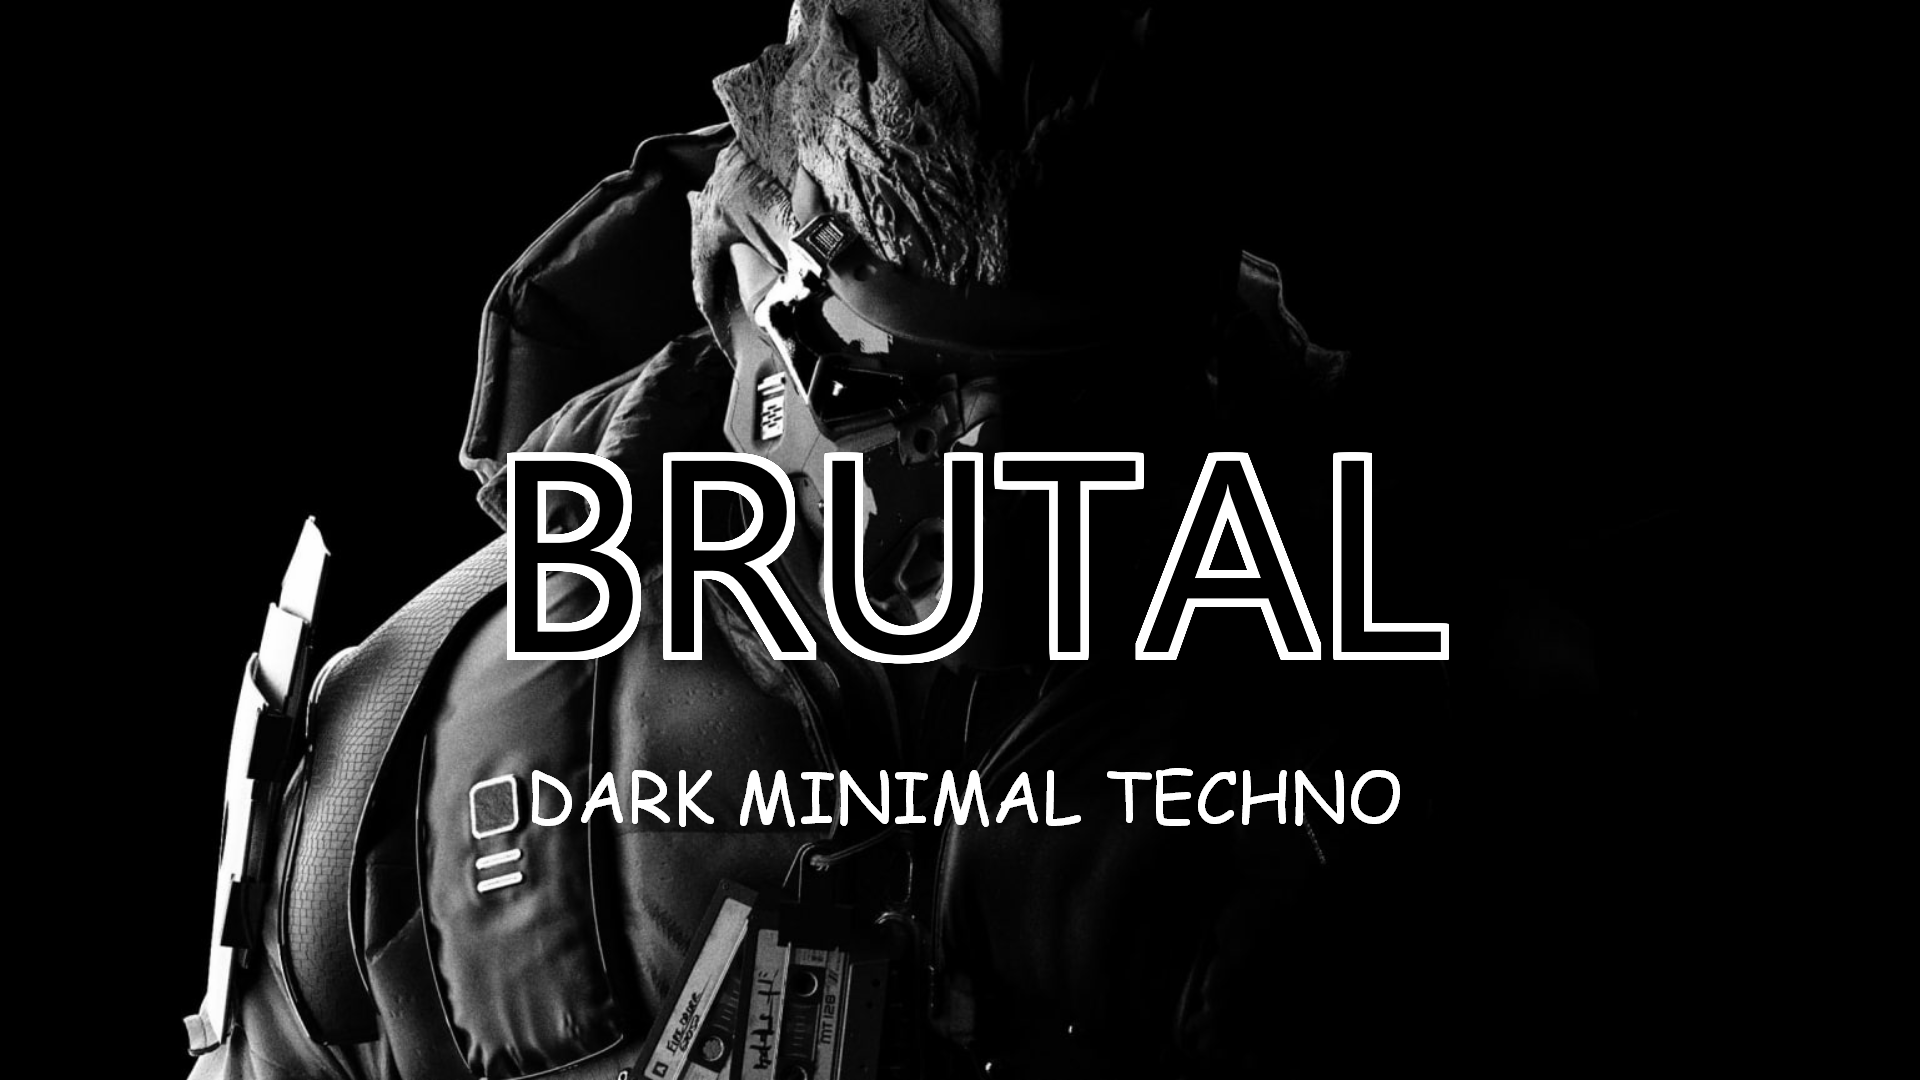 BRUTAL | Dark minimal Techno | Dj mix